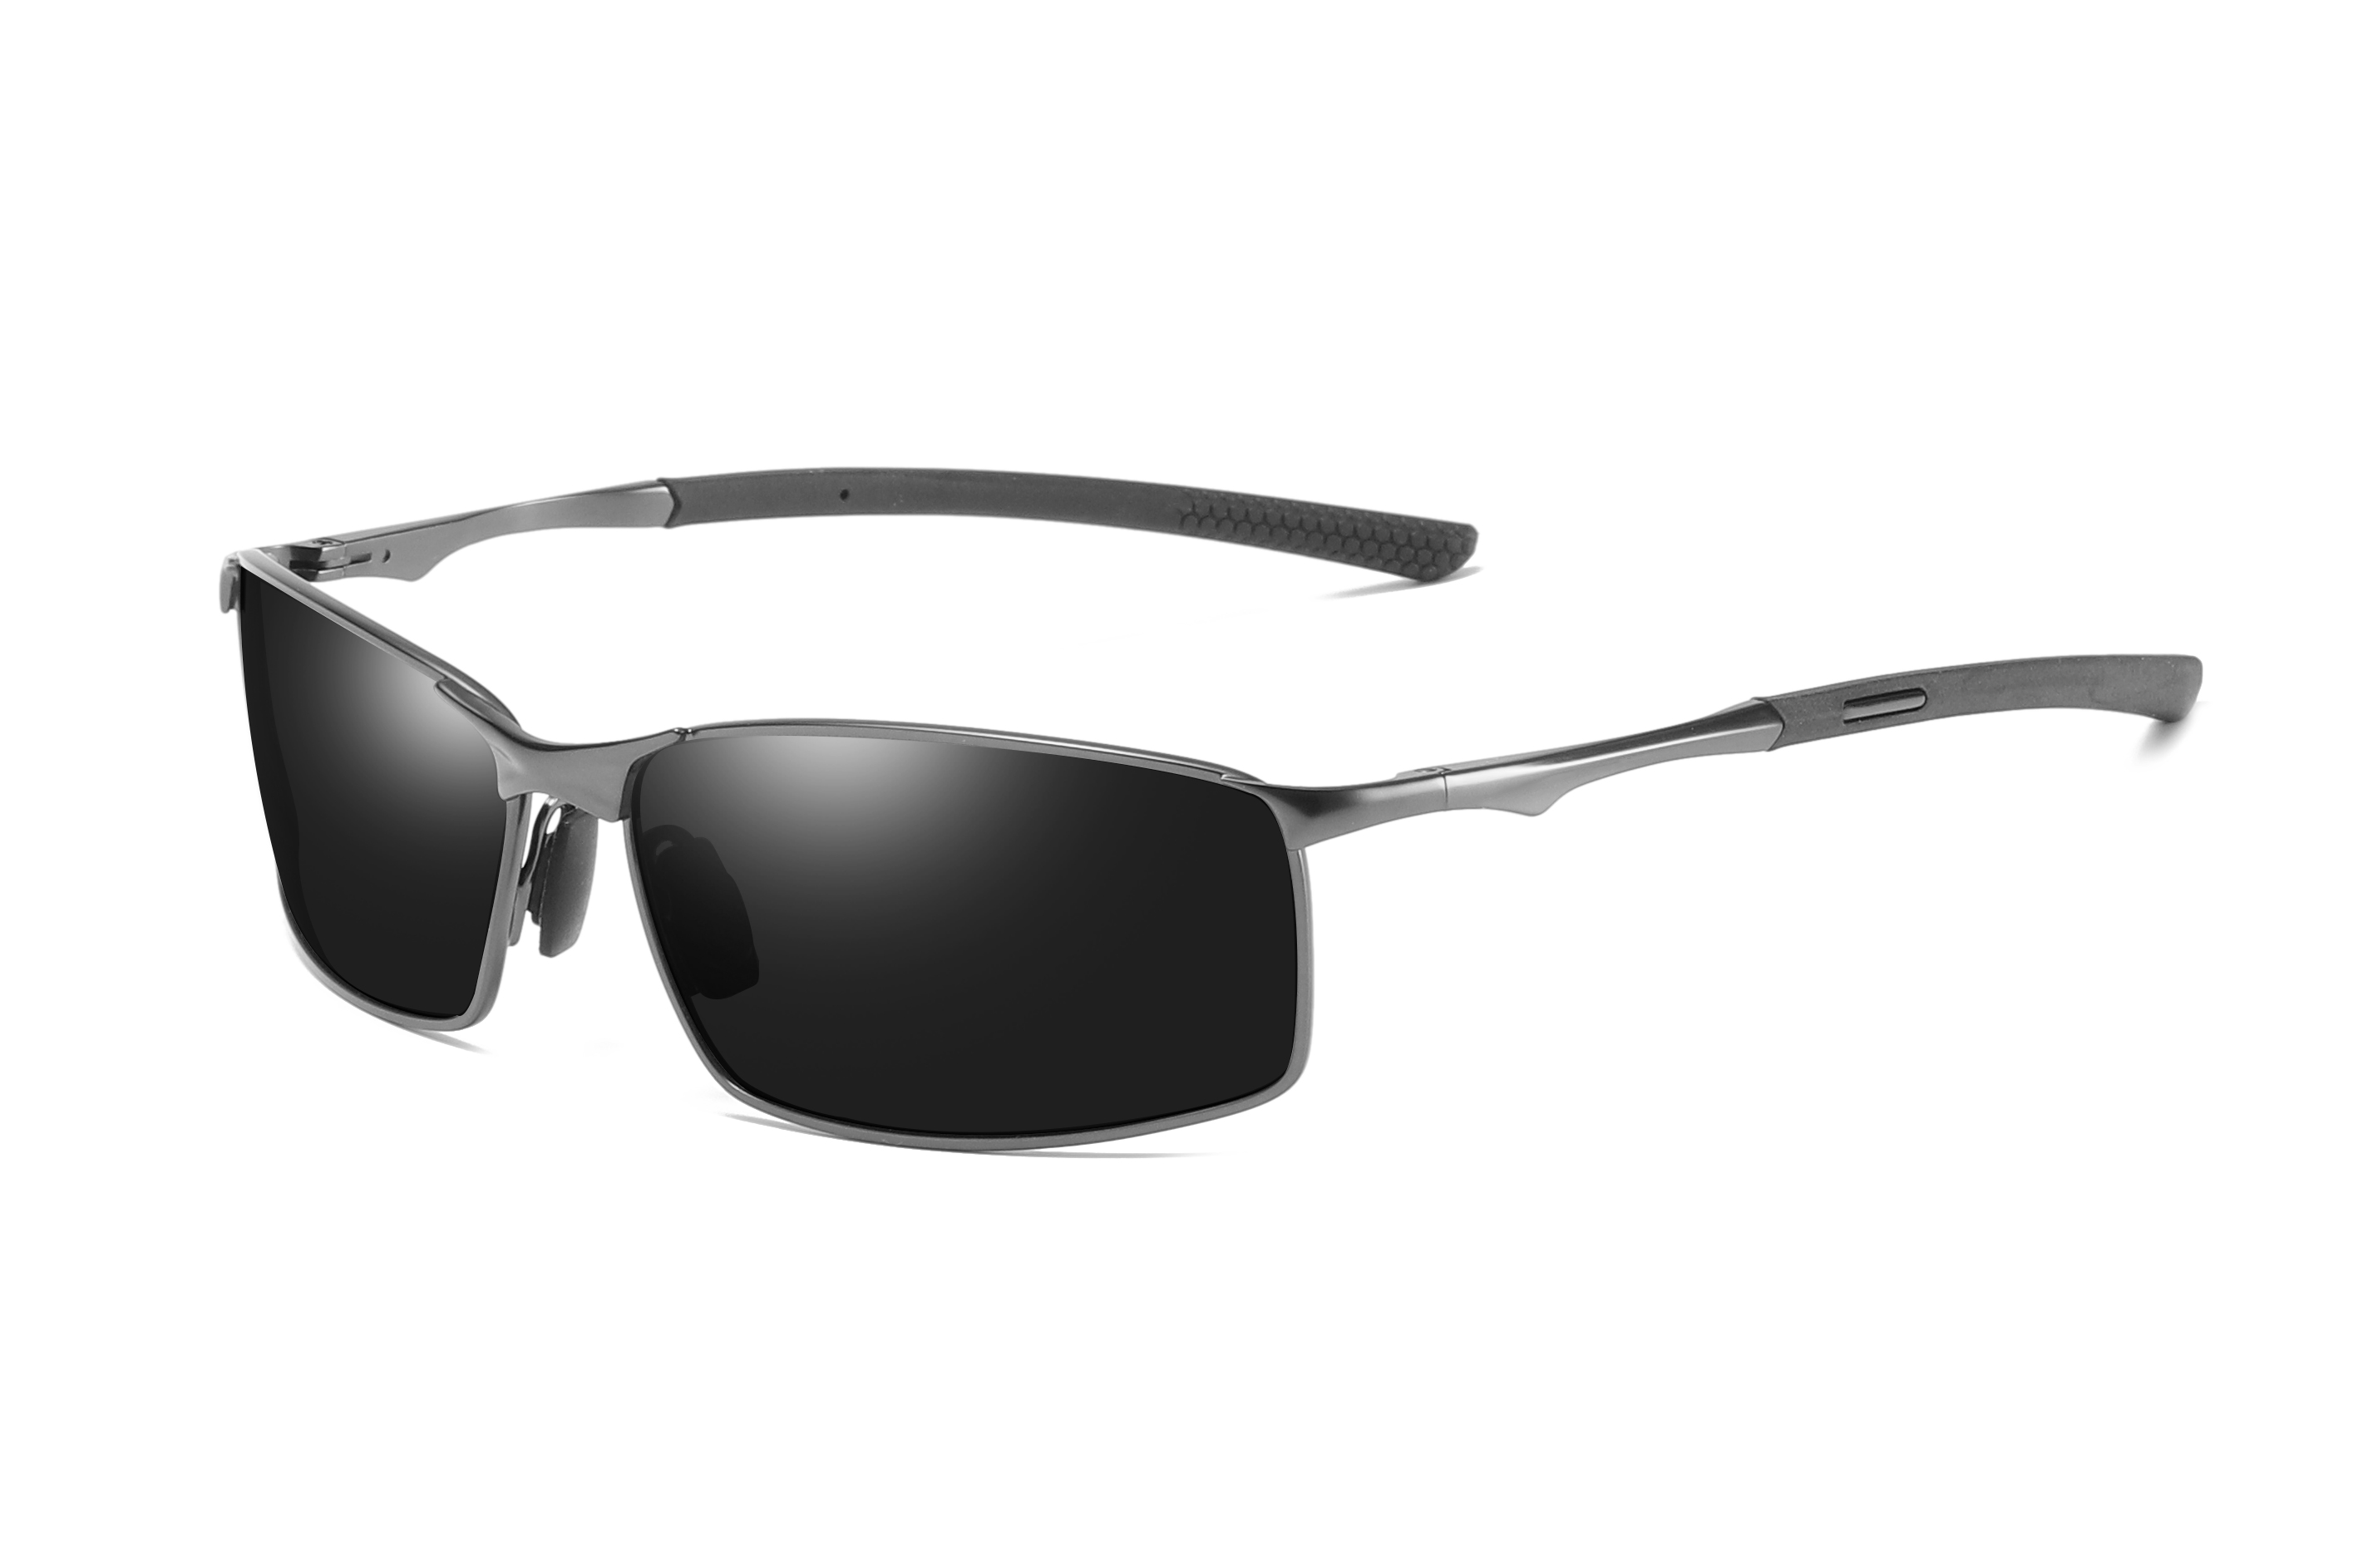 Класичні прямокутні чоловічі сонцезахисні окуляри Driving Metal + Rubber поляризовані сонцезахисні окуляри #81697